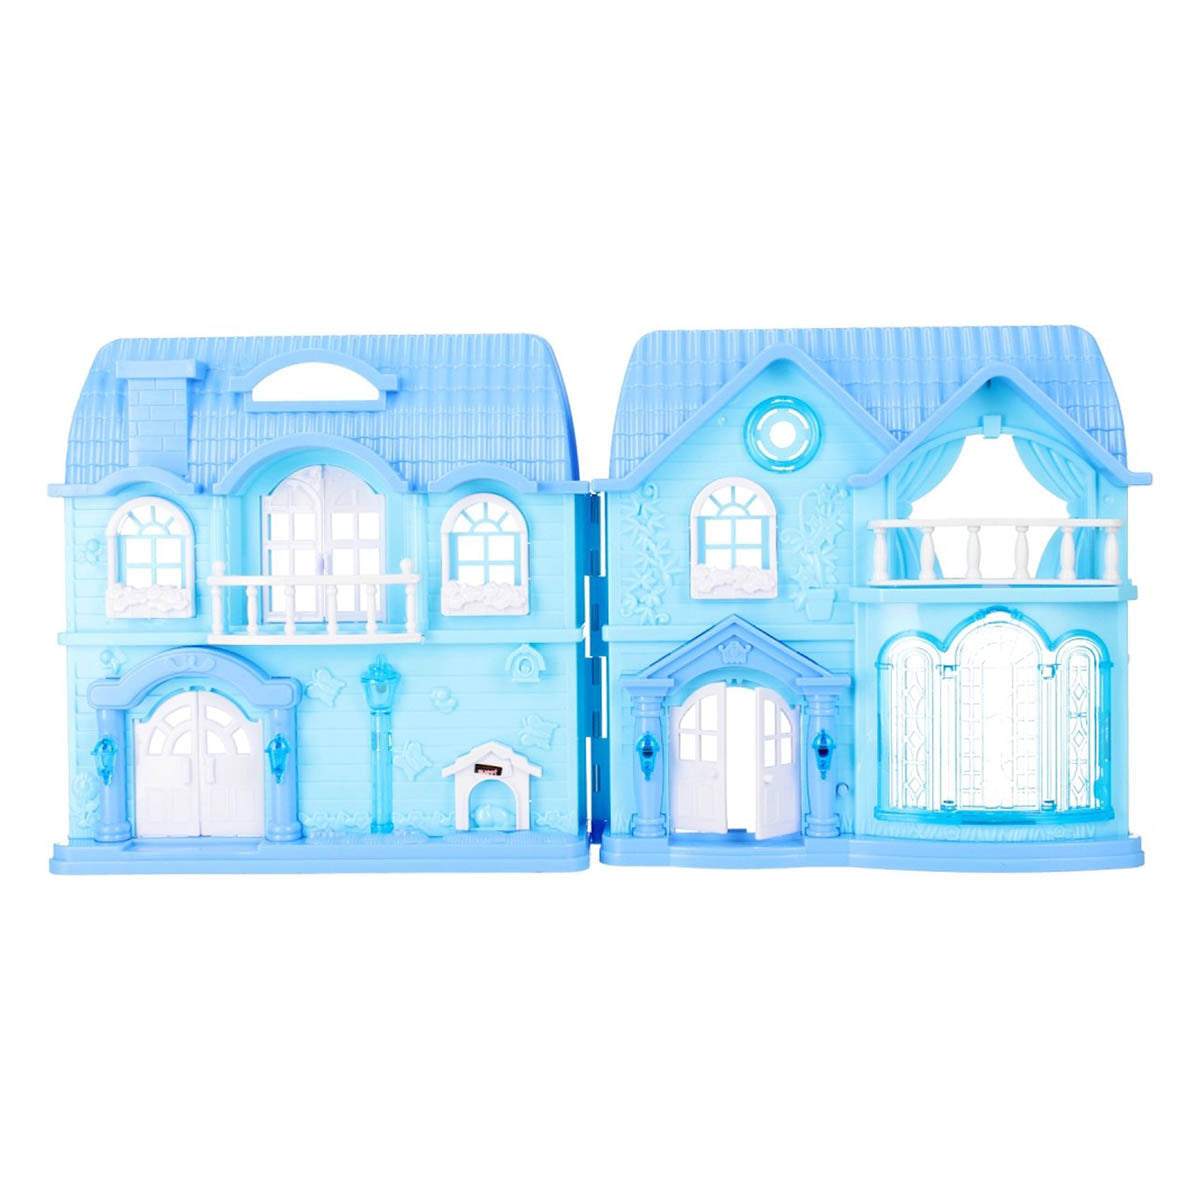 Ariko Dollhouse My New Home Snow and Ice Series - Medium - Spectacle de musique et de lumière - comprenant un dossier de jardin et des meubles de cuisine et de chambre - comprenant 2 piles AA de Philips